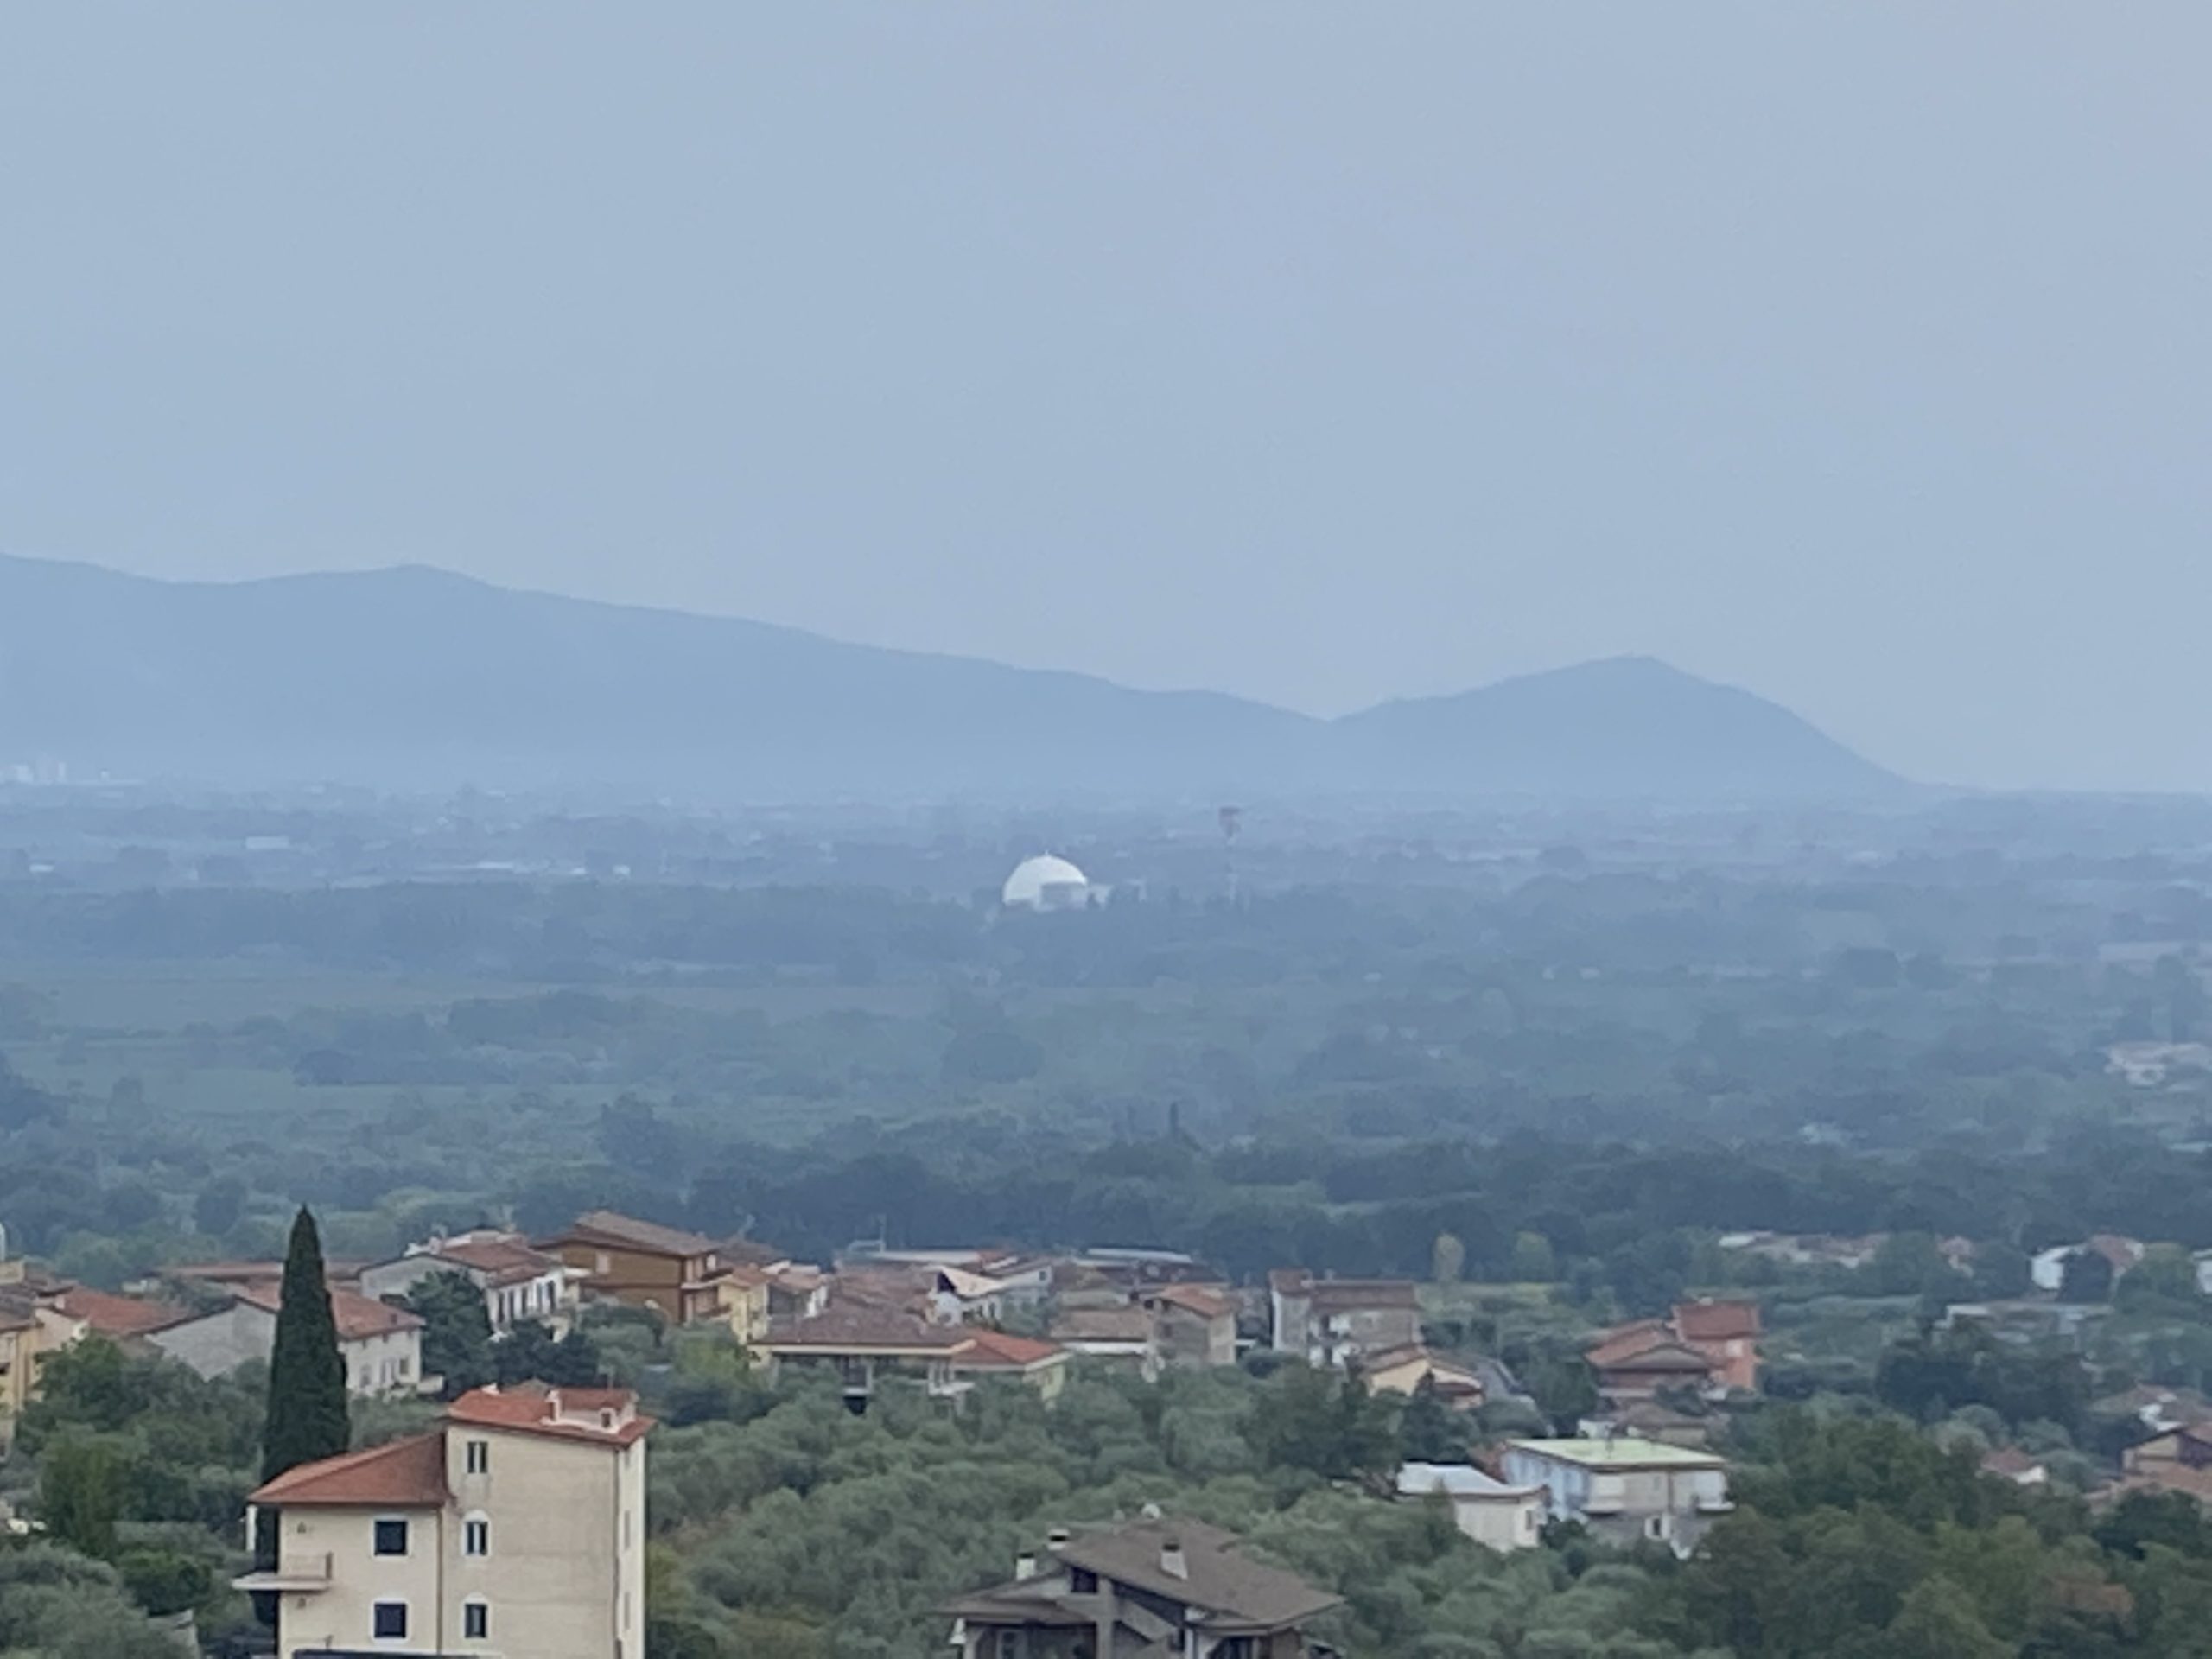 La centrale elettronucleare del Garigliano vista dalle colline di Castelforte e Santi Cosma e Damiano